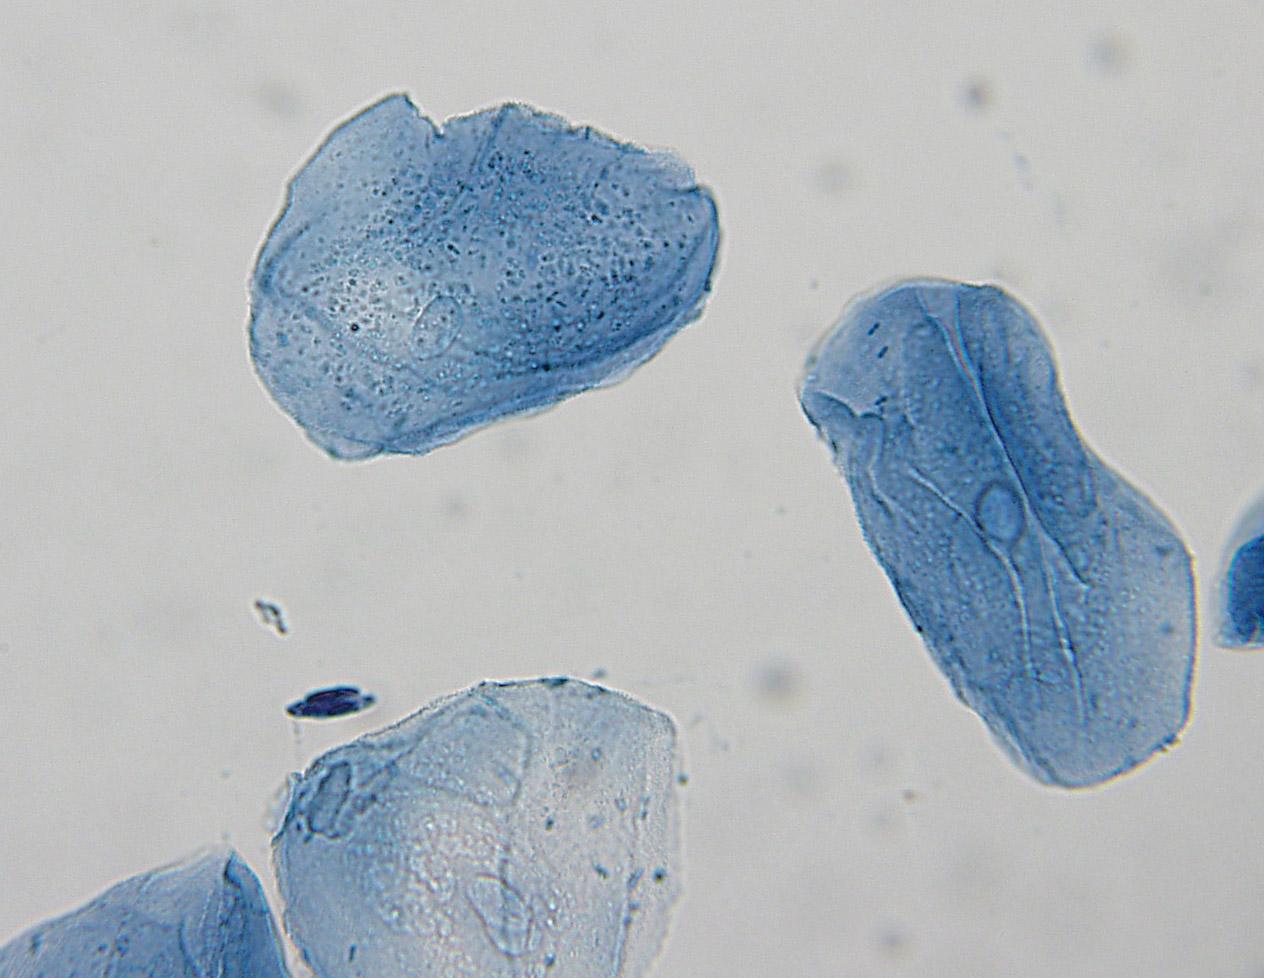 Mitochondria in human cheek cells